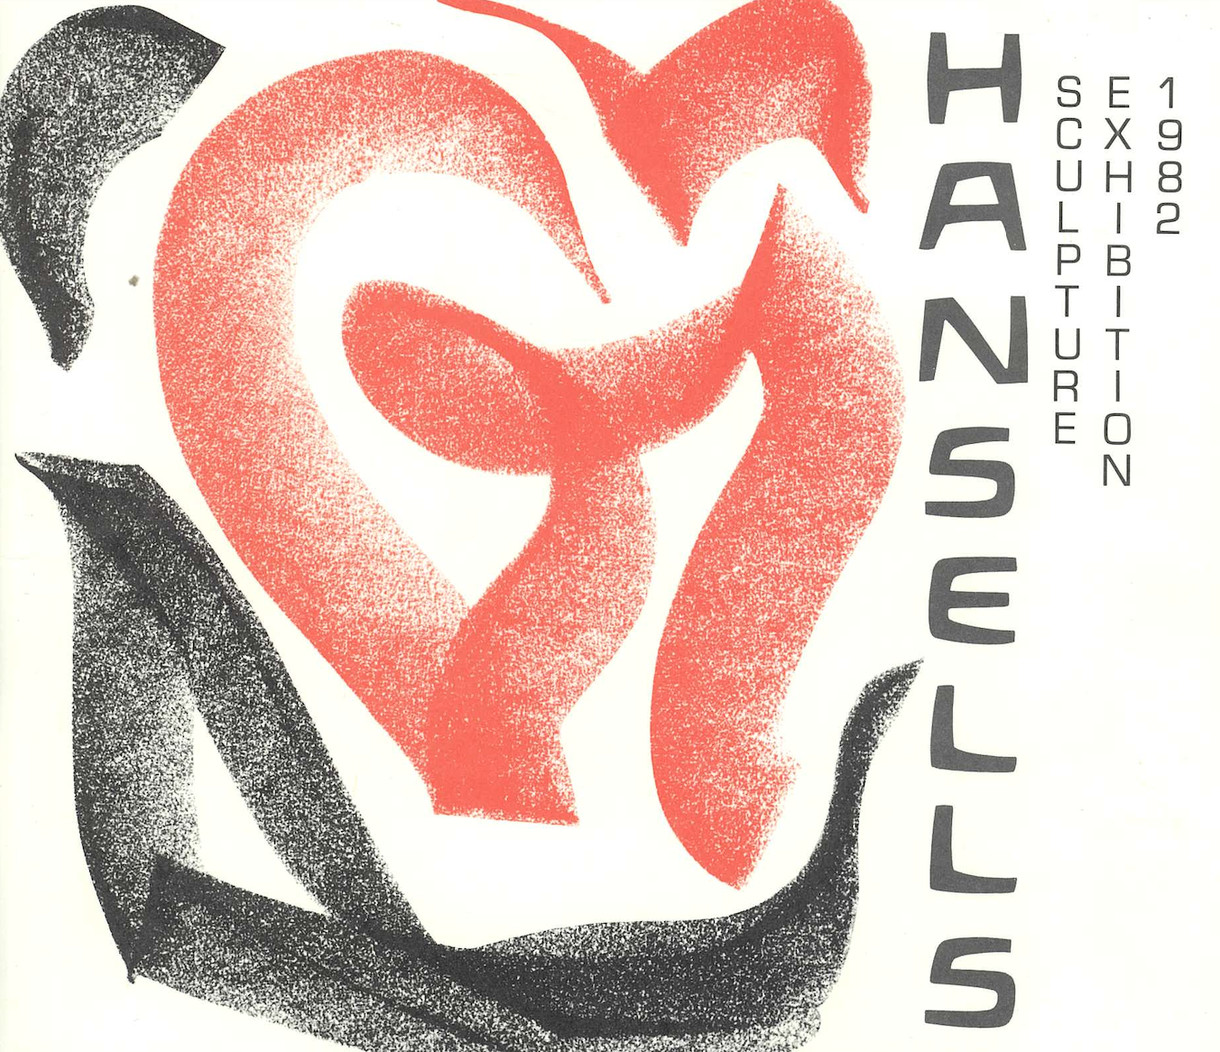 <p>Hansells Sculpture Exhibition 1983</p>